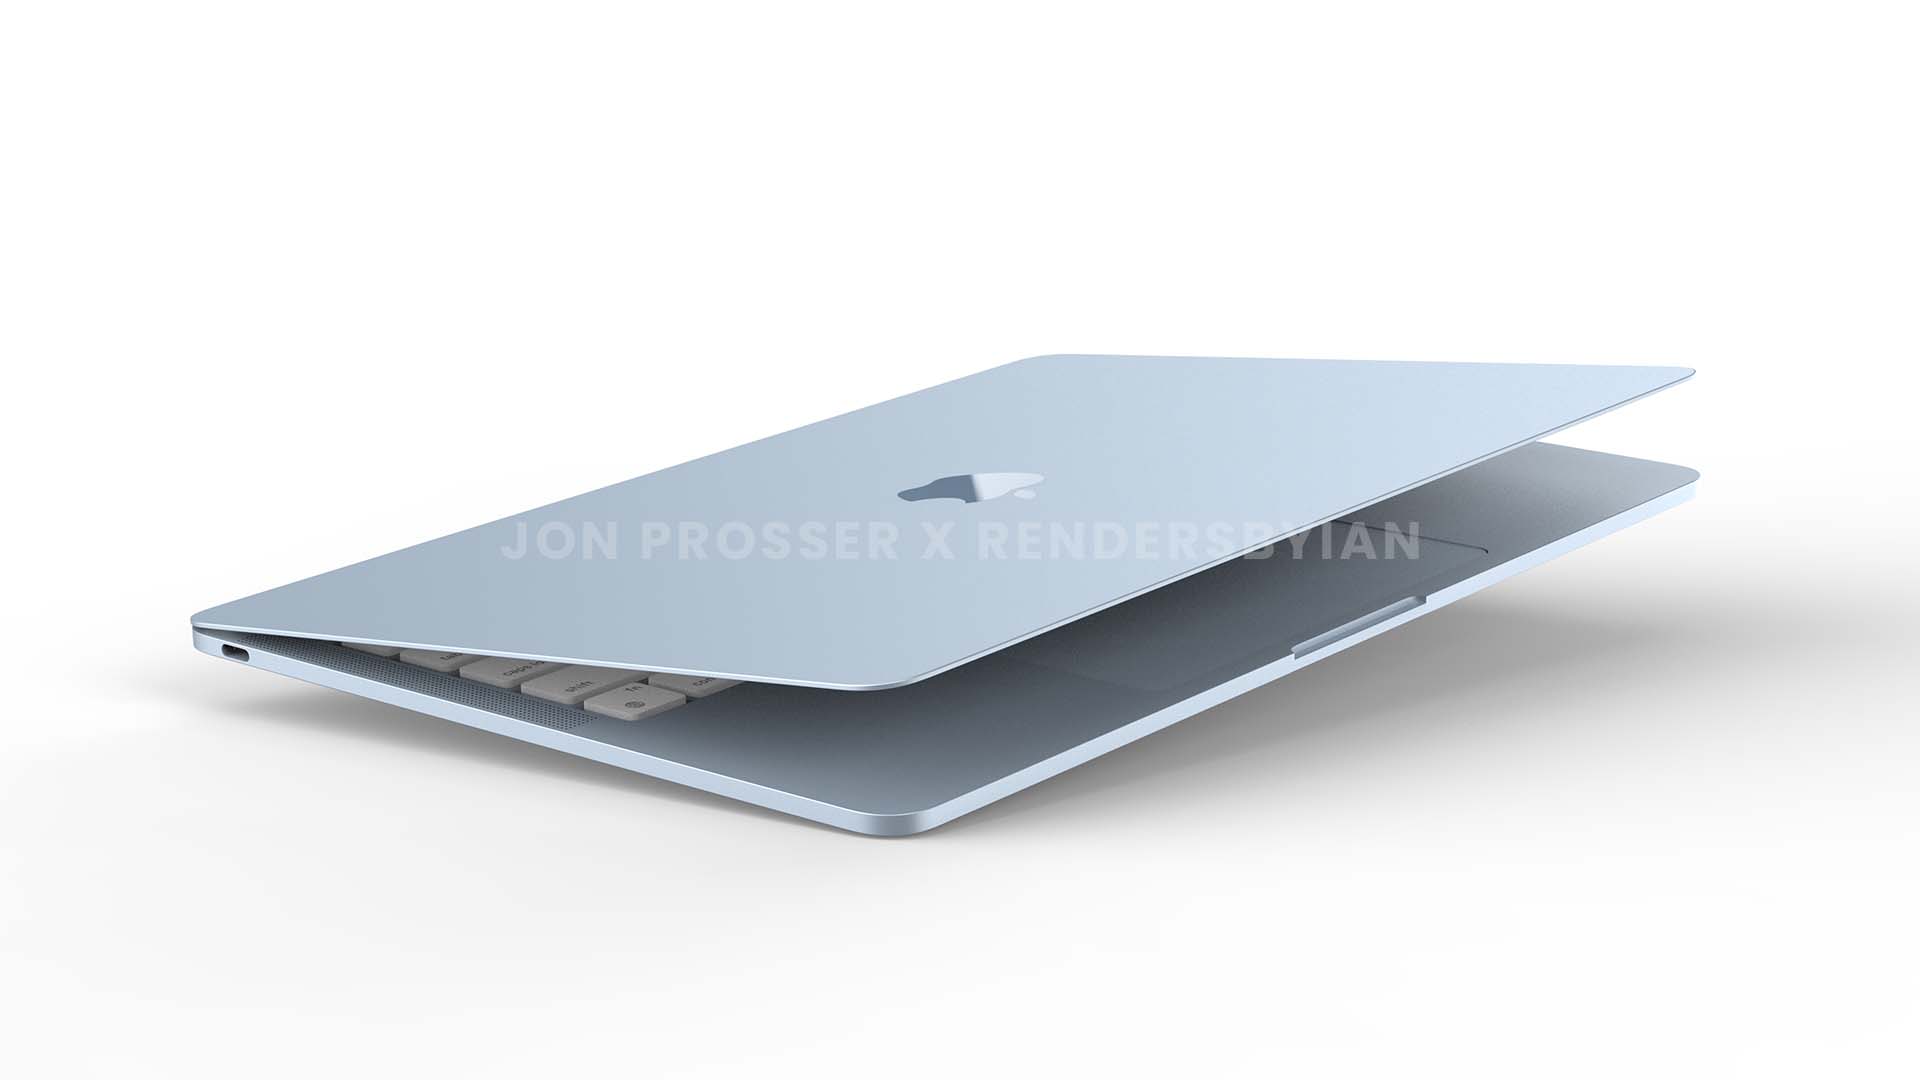 Renders revelam novo design do MacBook Air com múltiplas cores